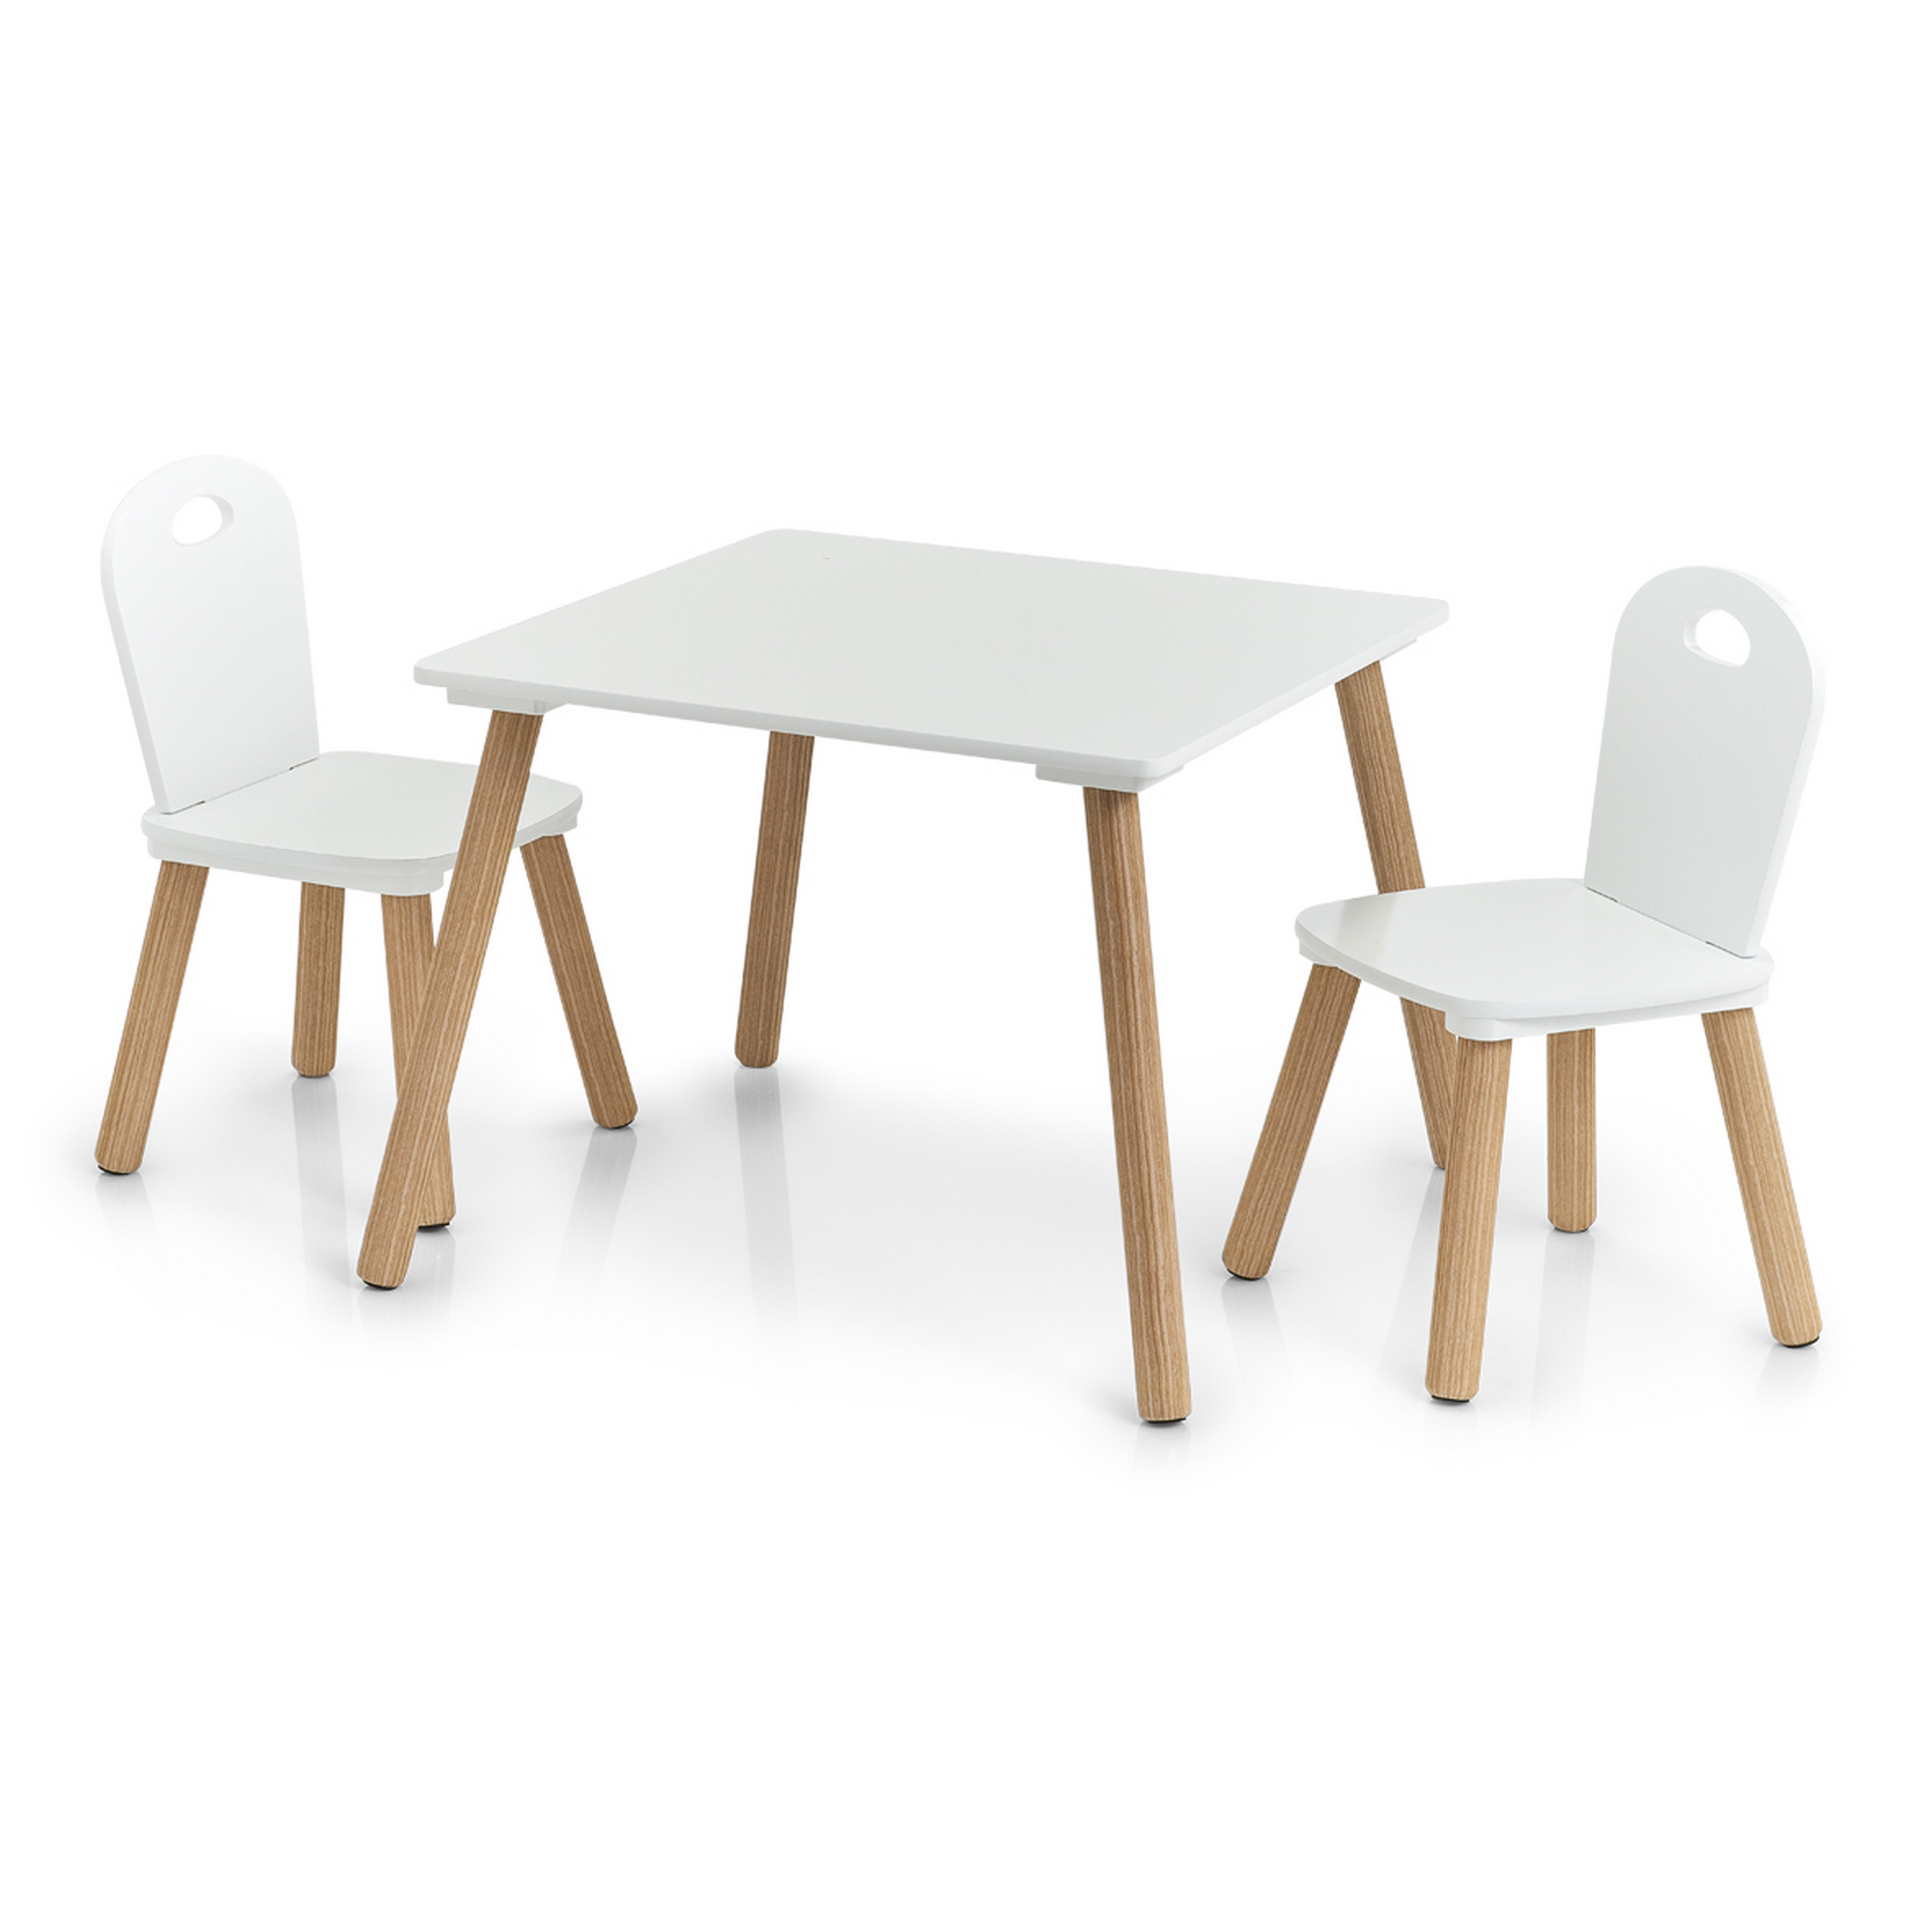 Kindersitzgruppe 'Scandi' holzfarben/weiß 3-teilig + product picture